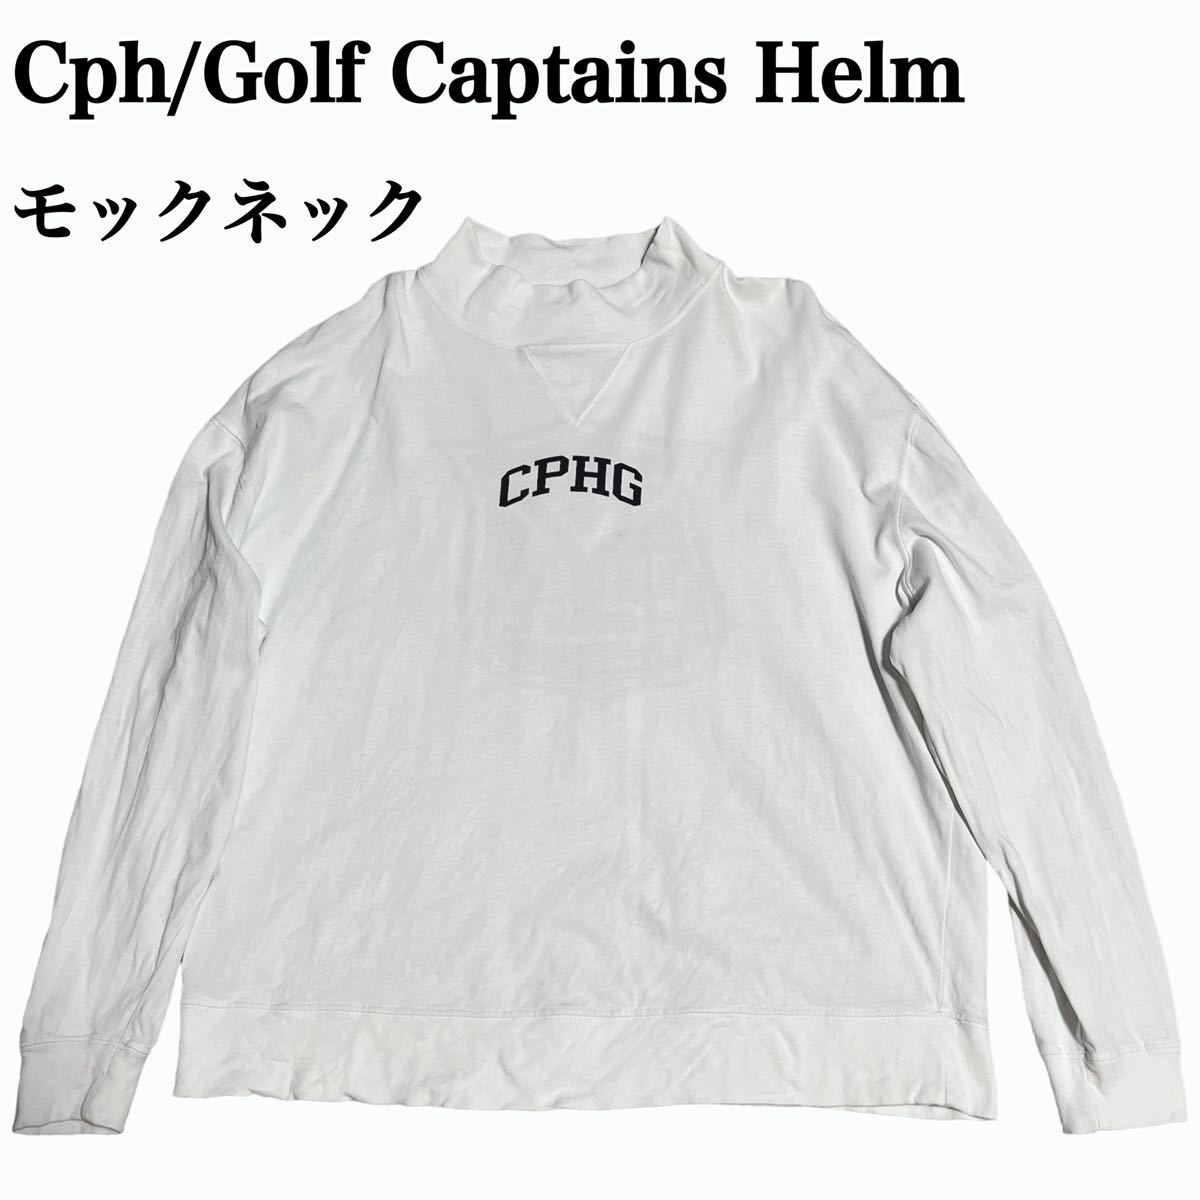 Cph/Golf Captains Helm キャプテンズヘルム モックネック 長袖シャツ ロンT ロゴプリント ゴルフ メンズ